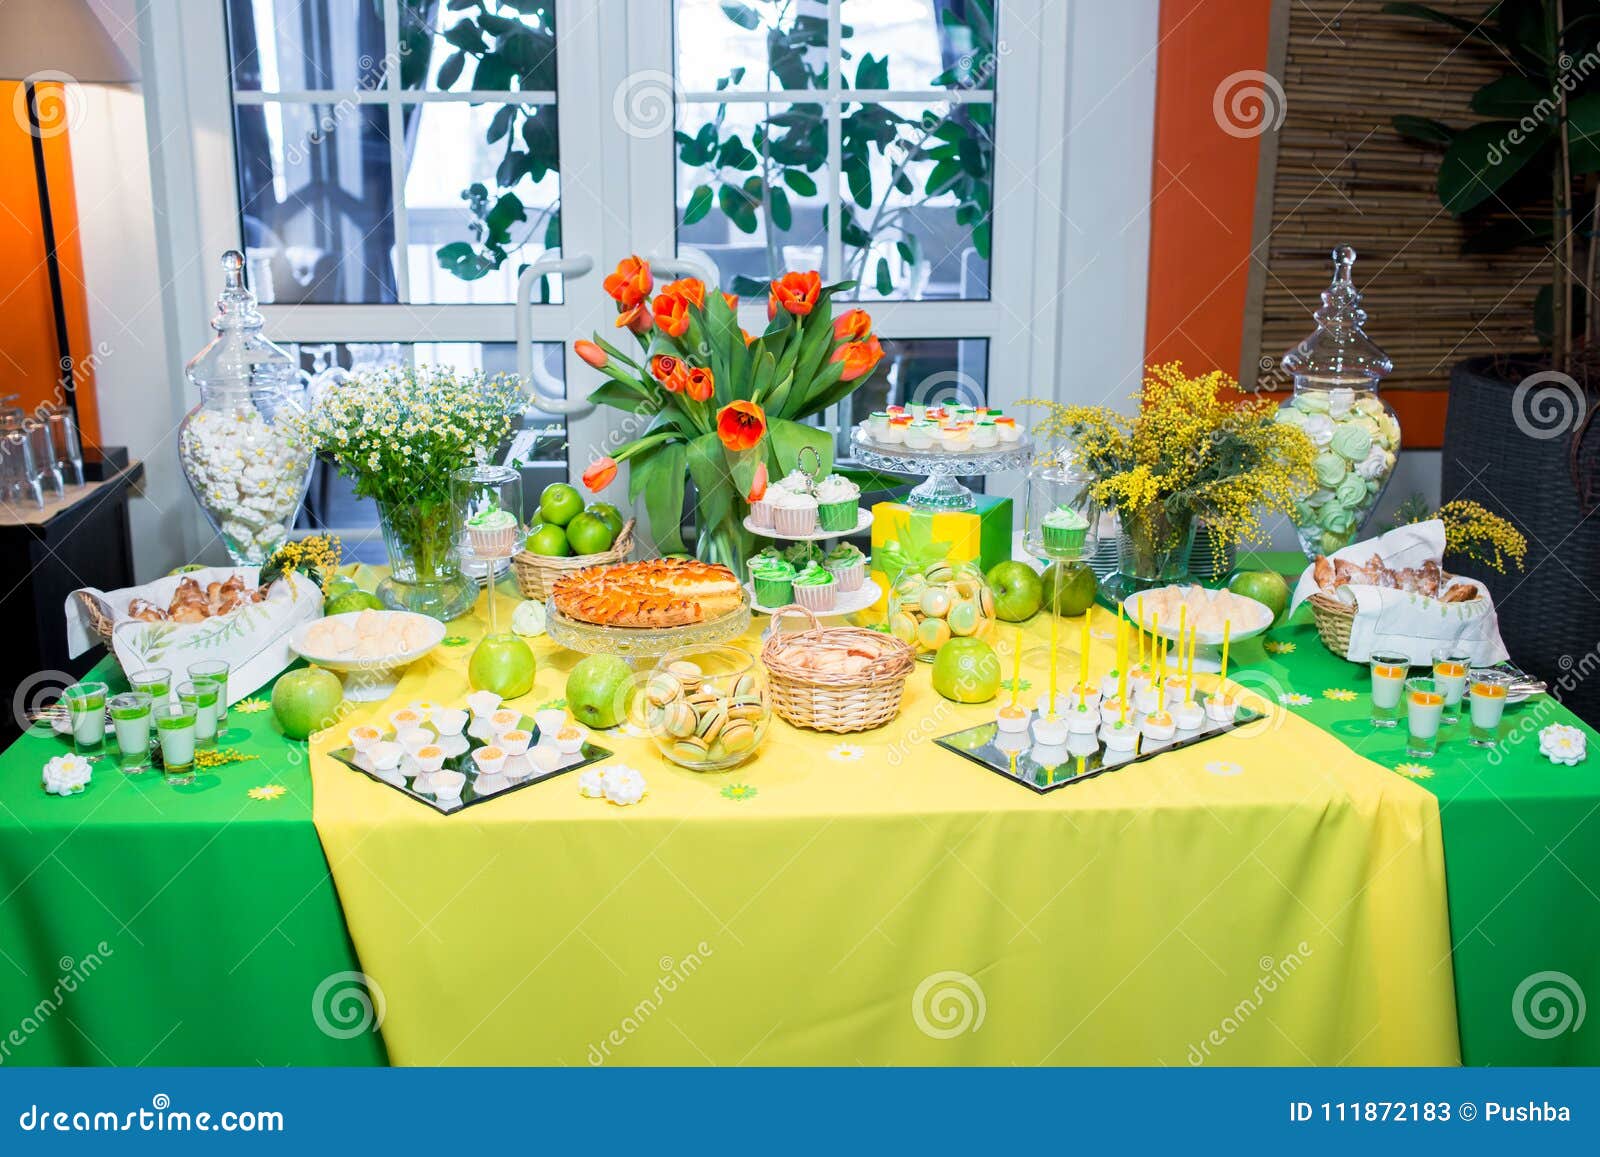 naar voren gebracht Altaar recorder Buffet Met Een Geelgroen Tafelkleed Met Snacks, Desserts En Een Boeket Van  Tulpen Stock Afbeelding - Image of voedsel, partij: 111872183